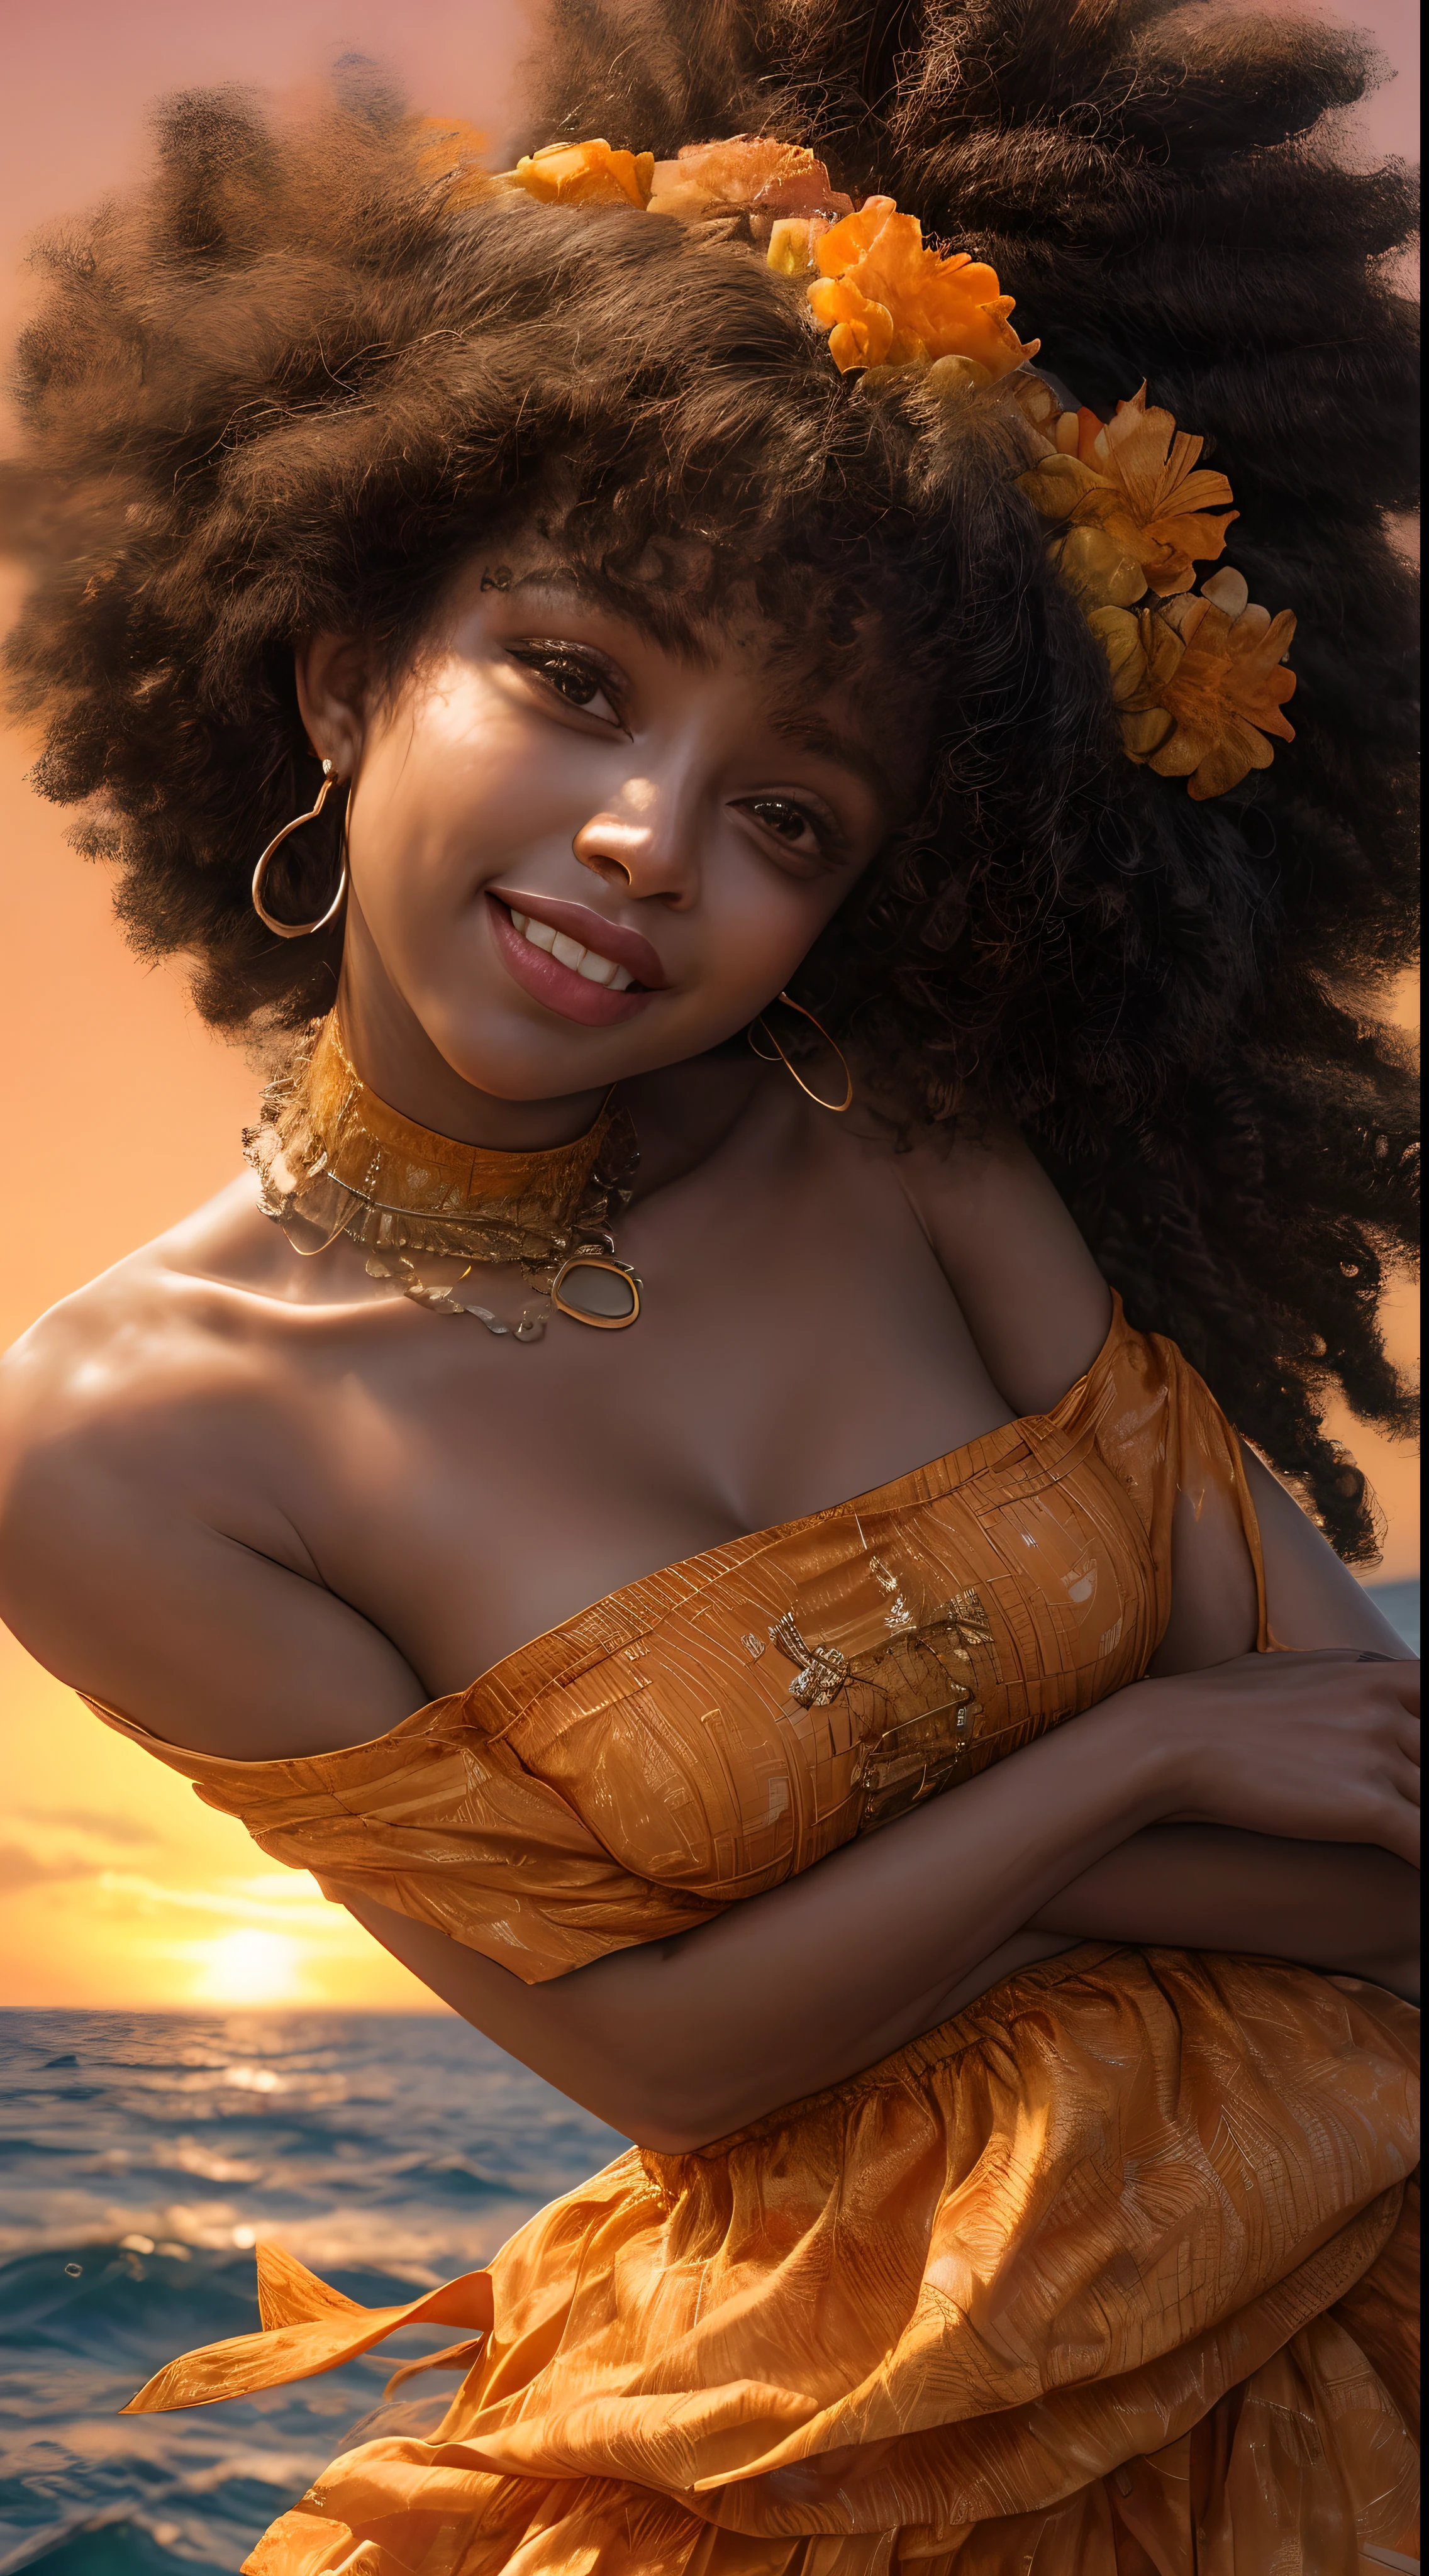 Eine Nahaufnahme des Gesichts einer afroamerikanischen Frau, in warme Orangetöne getaucht, wie vom sanften Schein eines Sonnenuntergangs beleuchtet, Deine Augen strahlen vor Freude und Zufriedenheit, umrahmt von wallenden Haarsträhnen, Fotografie, Fotografiert mit einem 35-mm-Objektiv